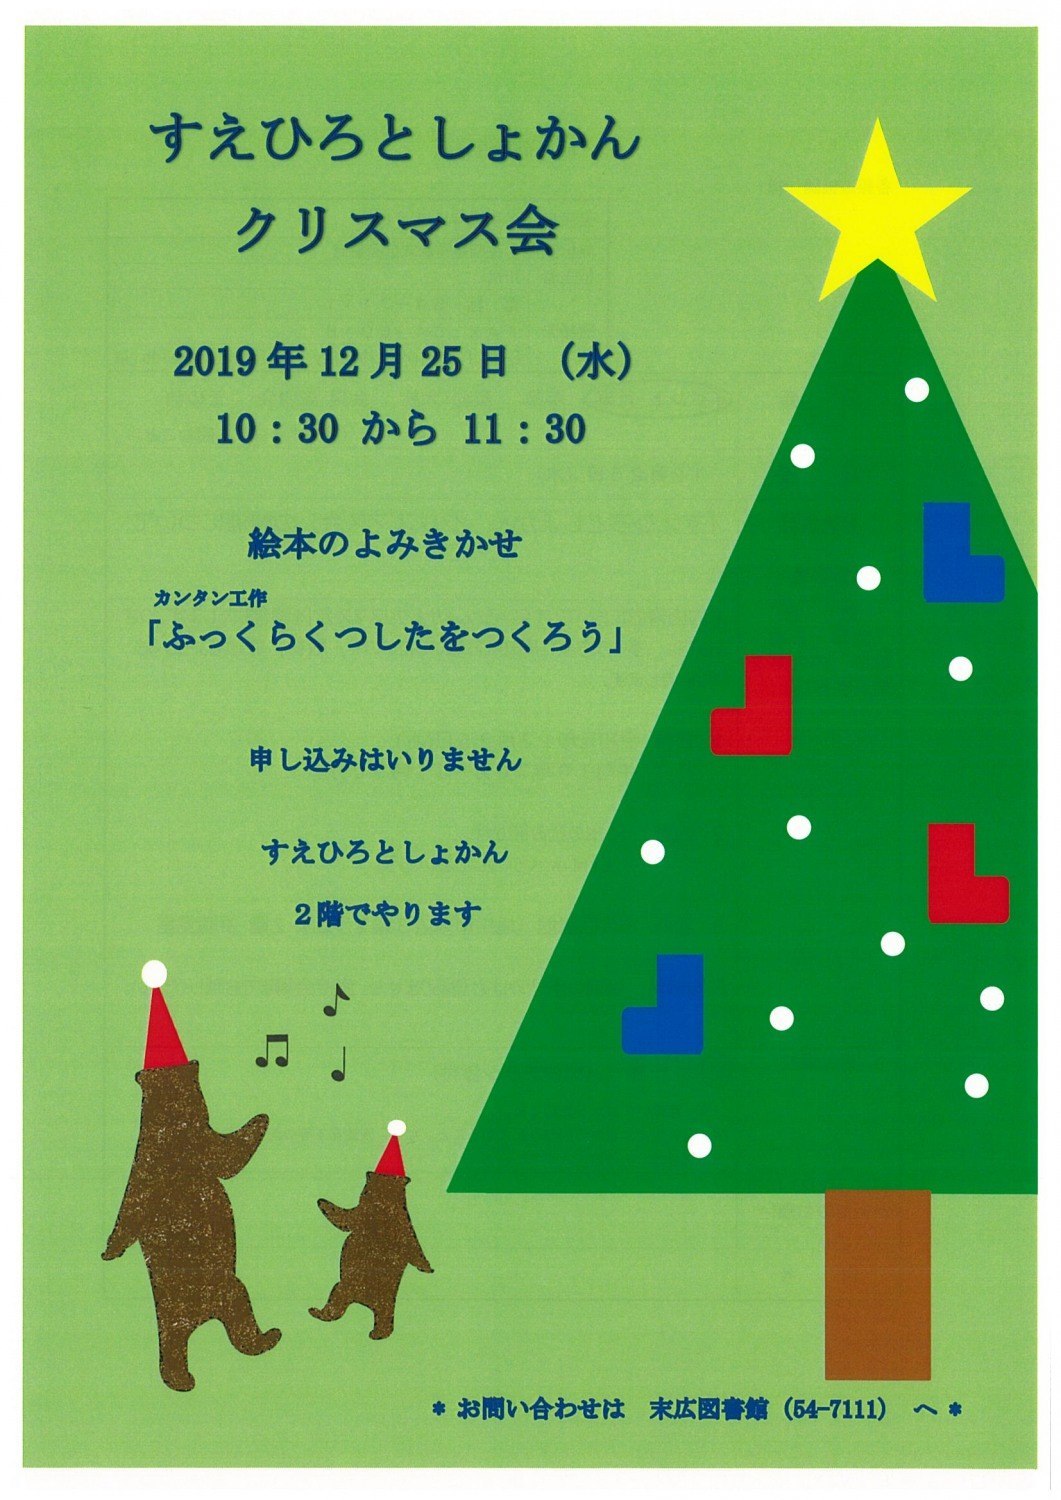 クリスマス会 旭川市末広 イベント ライナーウェブ